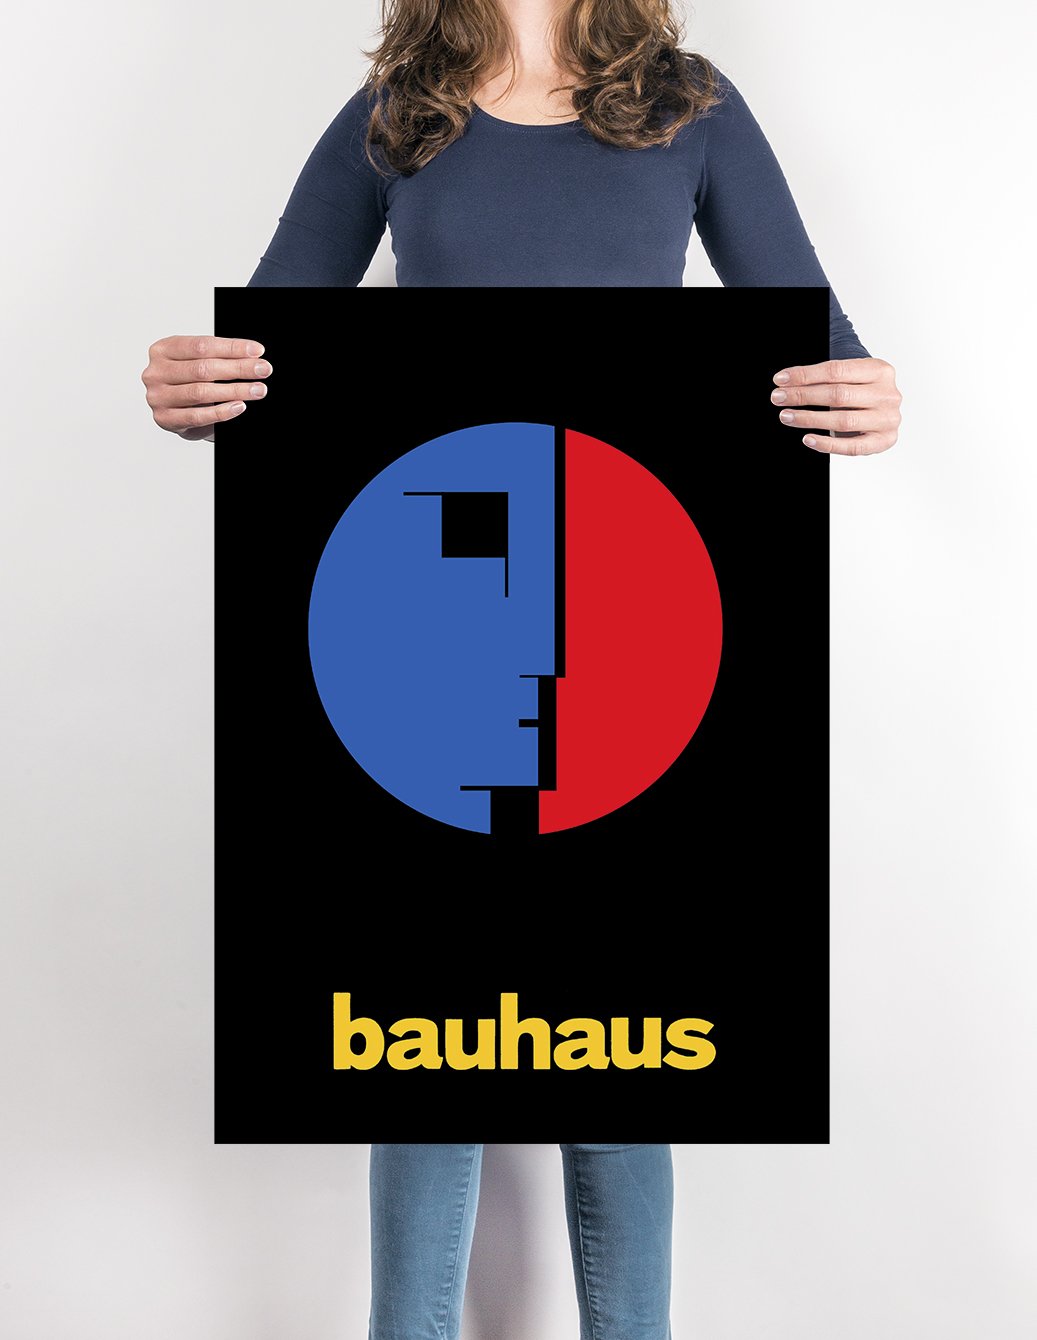 Bauhaus Poster – Kuriosis Trade / B2B